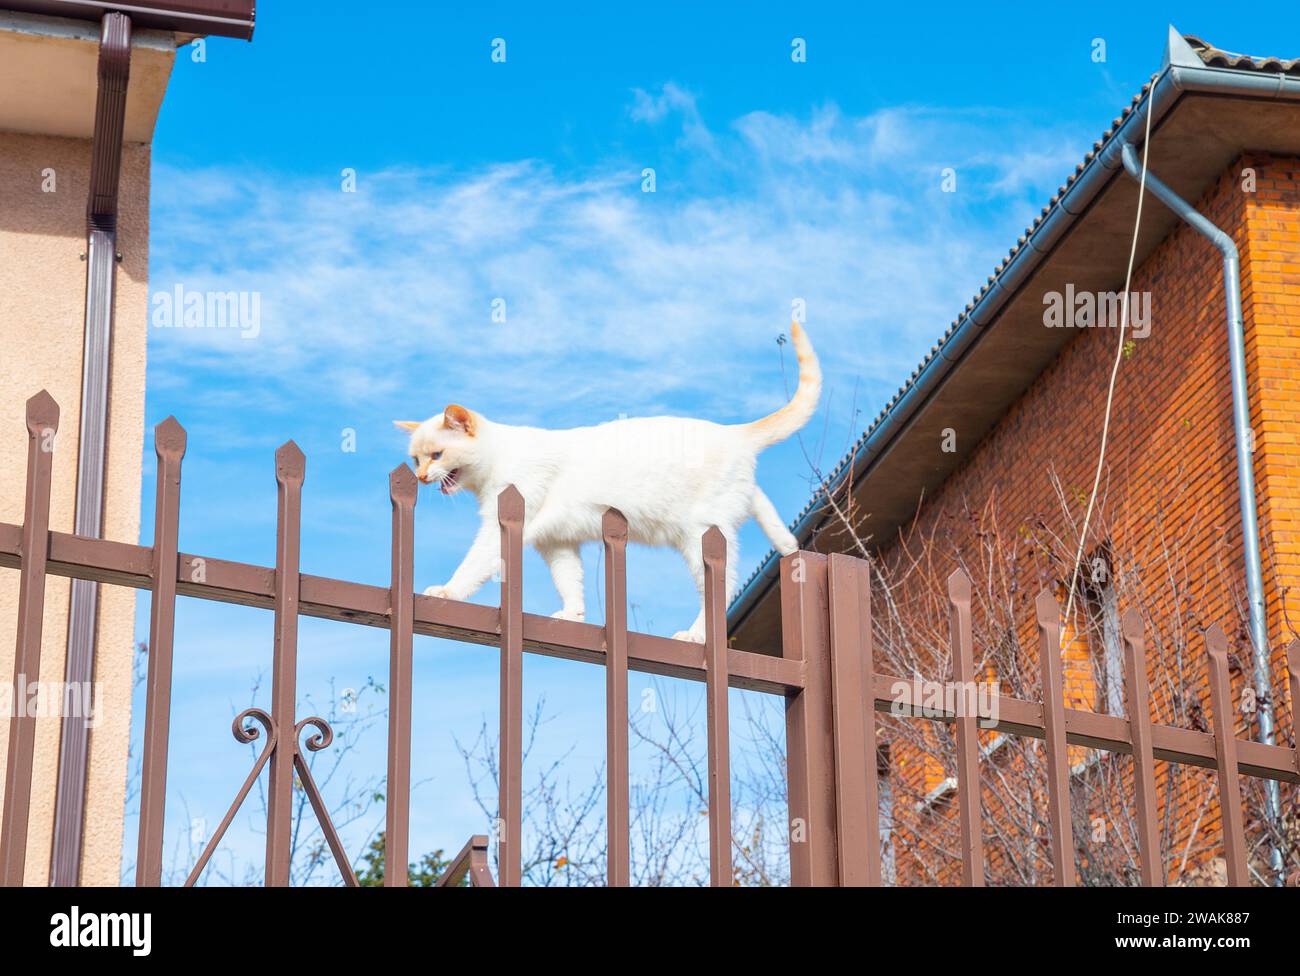 Chaton blanc marchant le long d'une clôture de fer. Banque D'Images